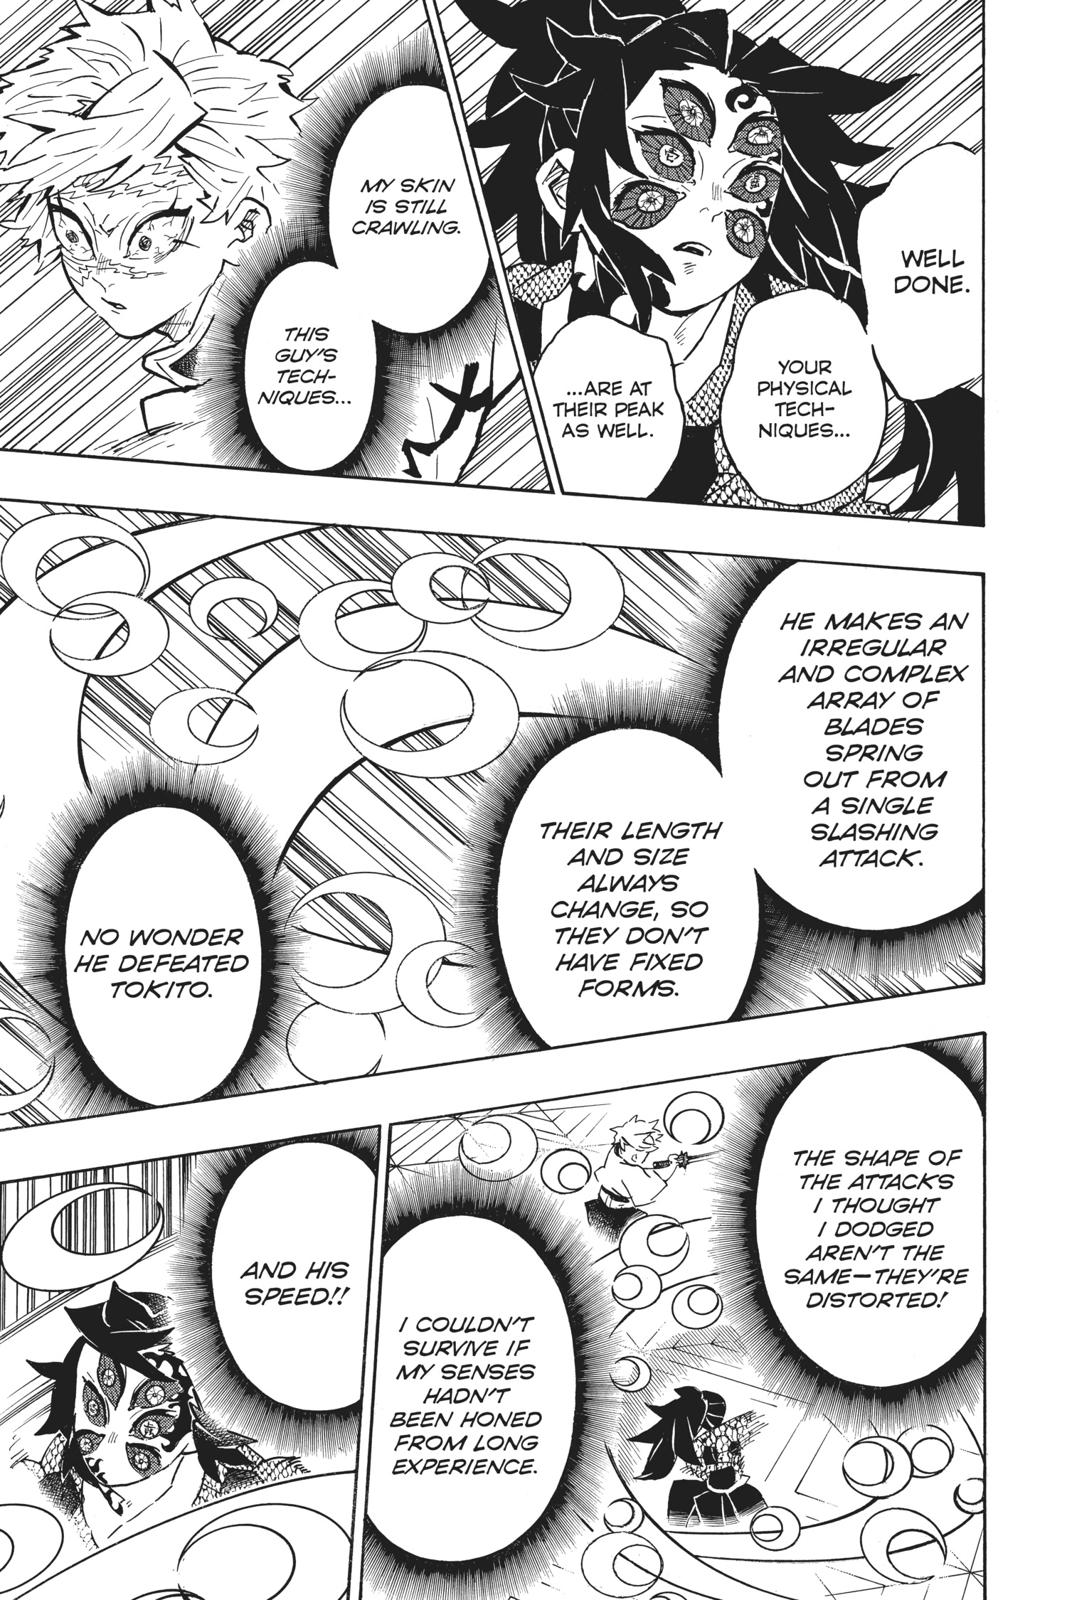 Demon Slayer Manga Manga Chapter - 167 - image 5